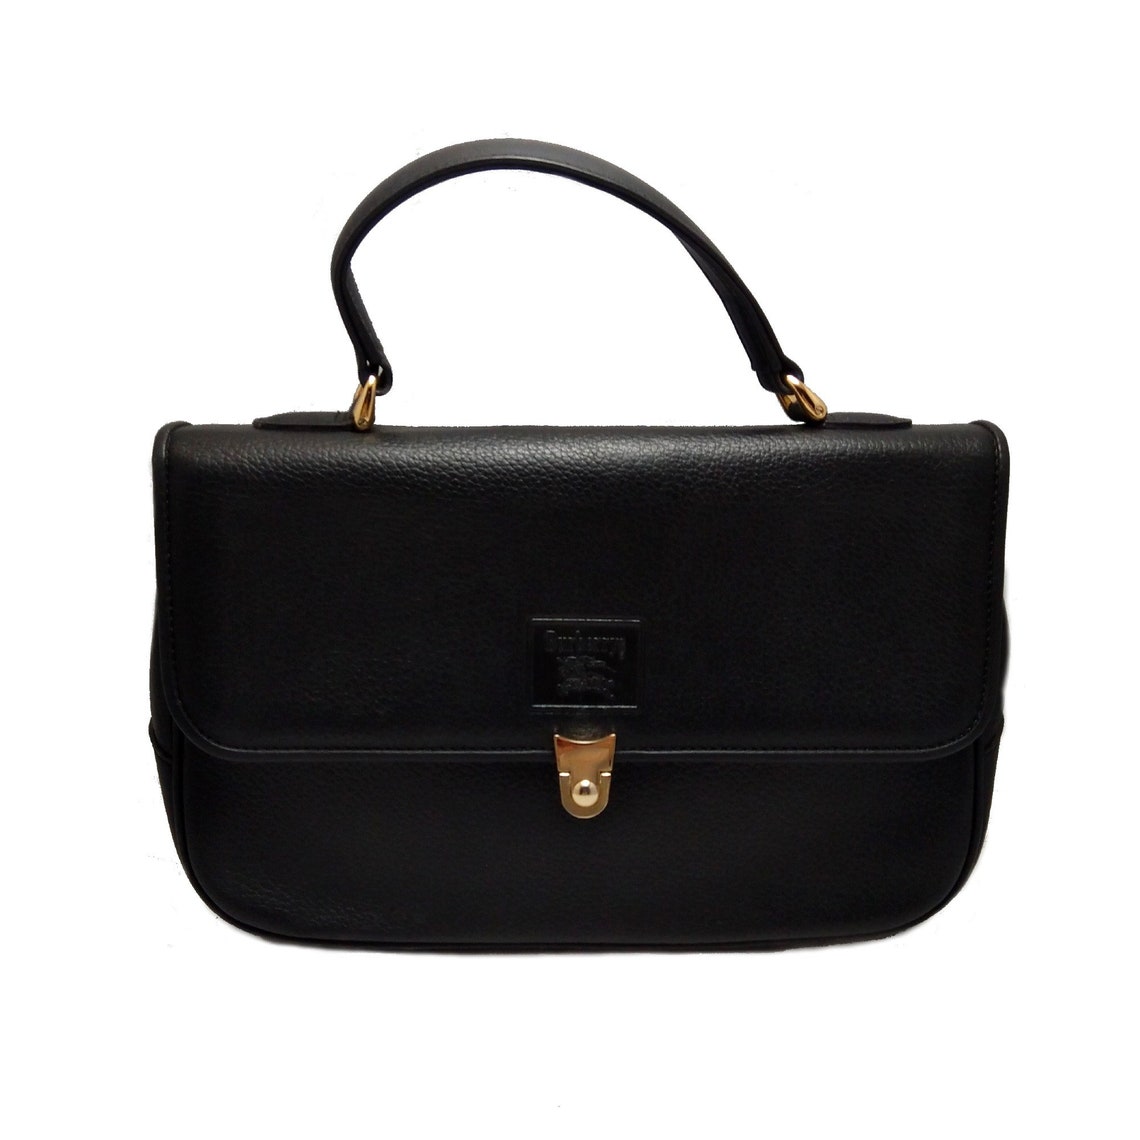 Vintage BURBERRYS Black Leather Handbag Gift for Her - Etsy